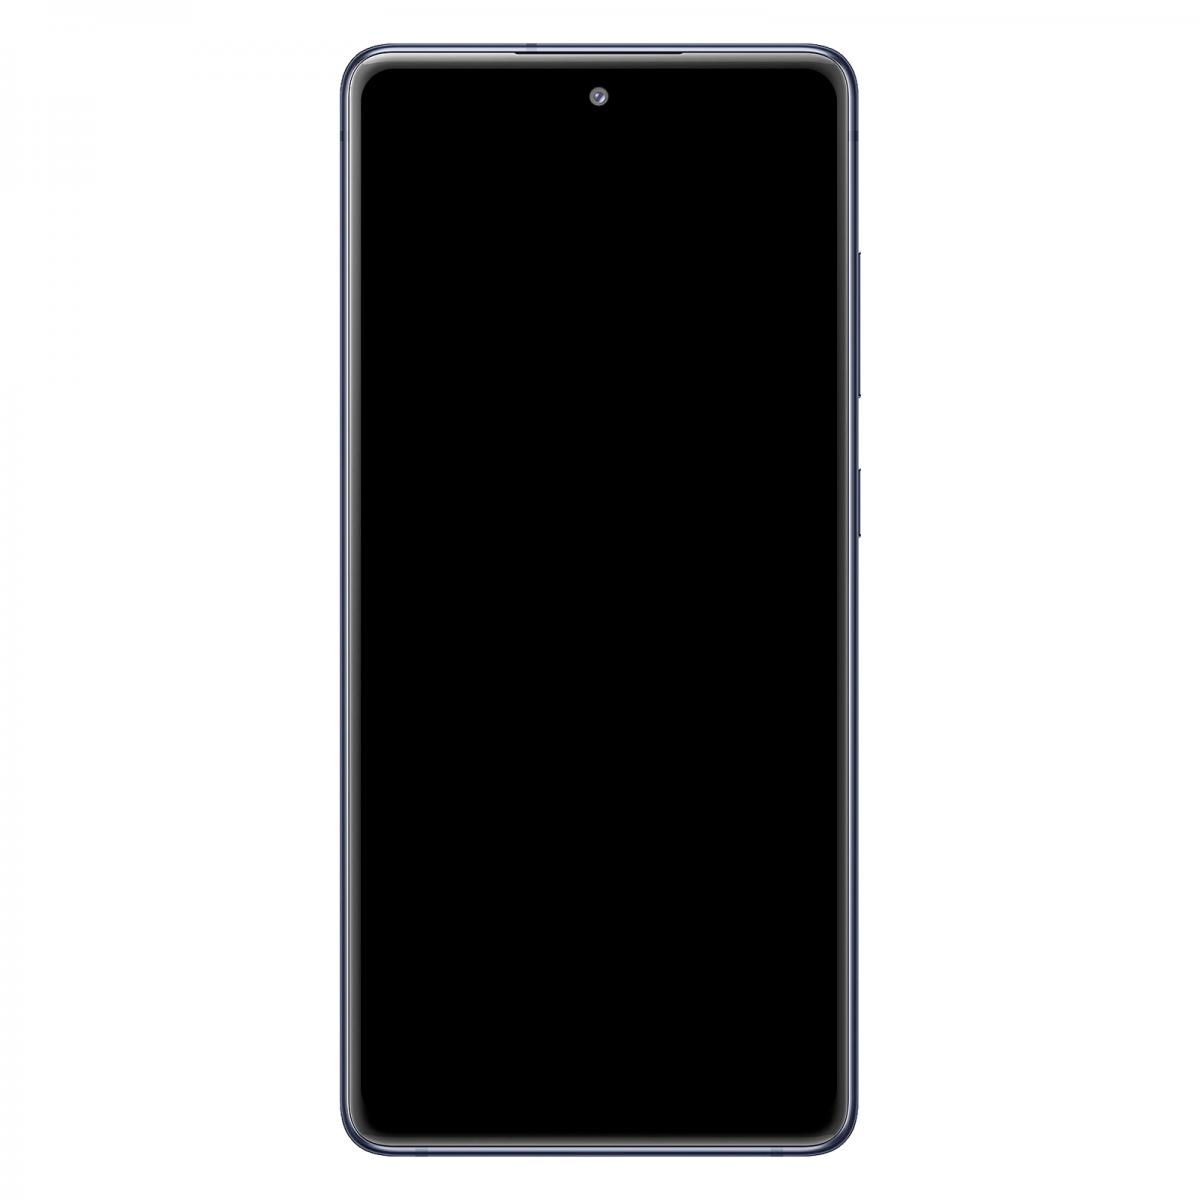 Bloc Complet Samsung Galaxy S20 FE 5G Écran LCD Vitre Tactile Original Bleu nuit